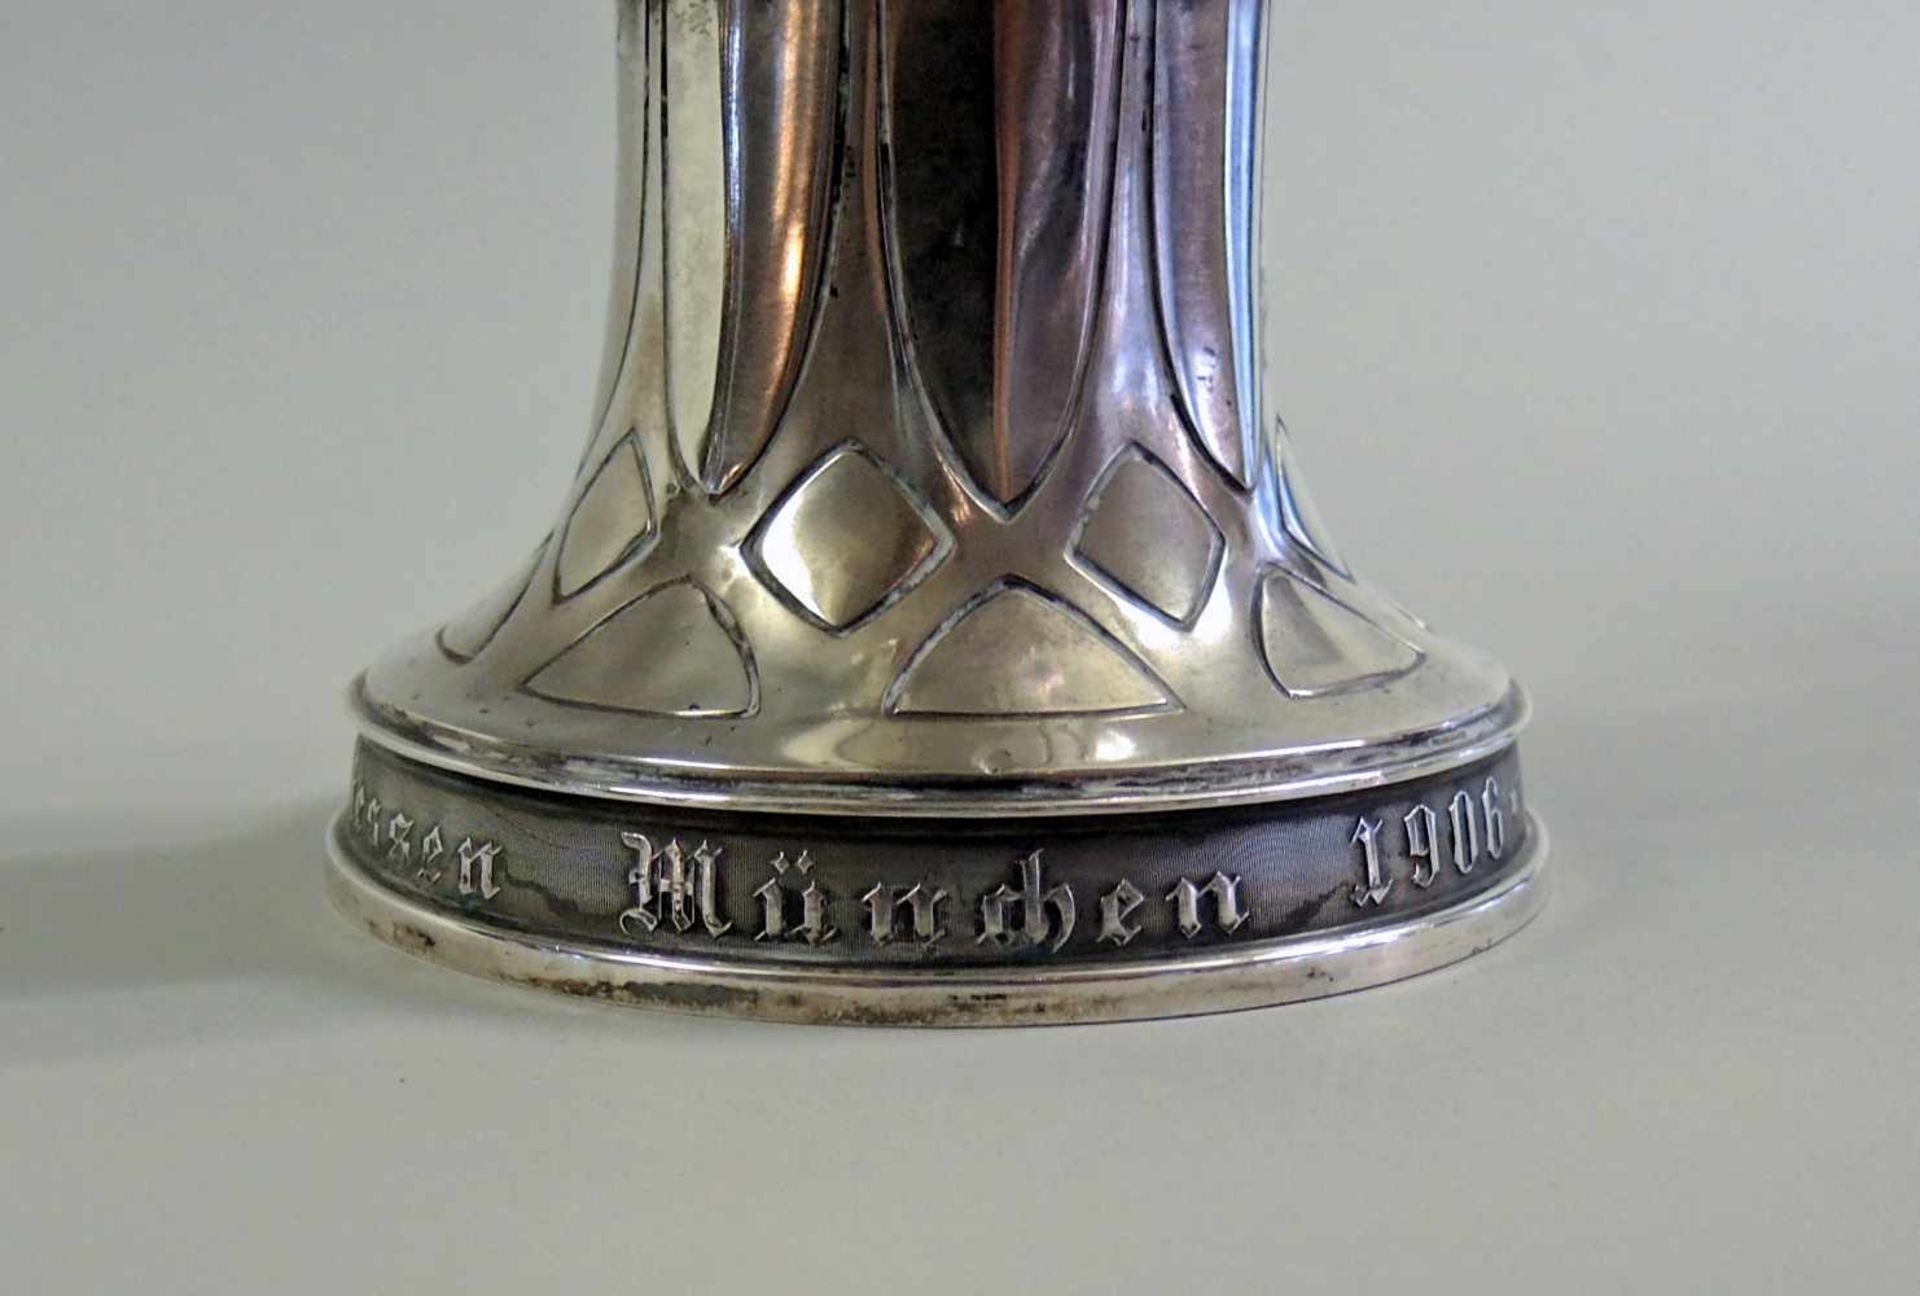 Pokal des Deutschen Bundesschießens Silber 800, am Fuß mit Feingehaltsstempel, Halbmond und Krone - Bild 2 aus 2